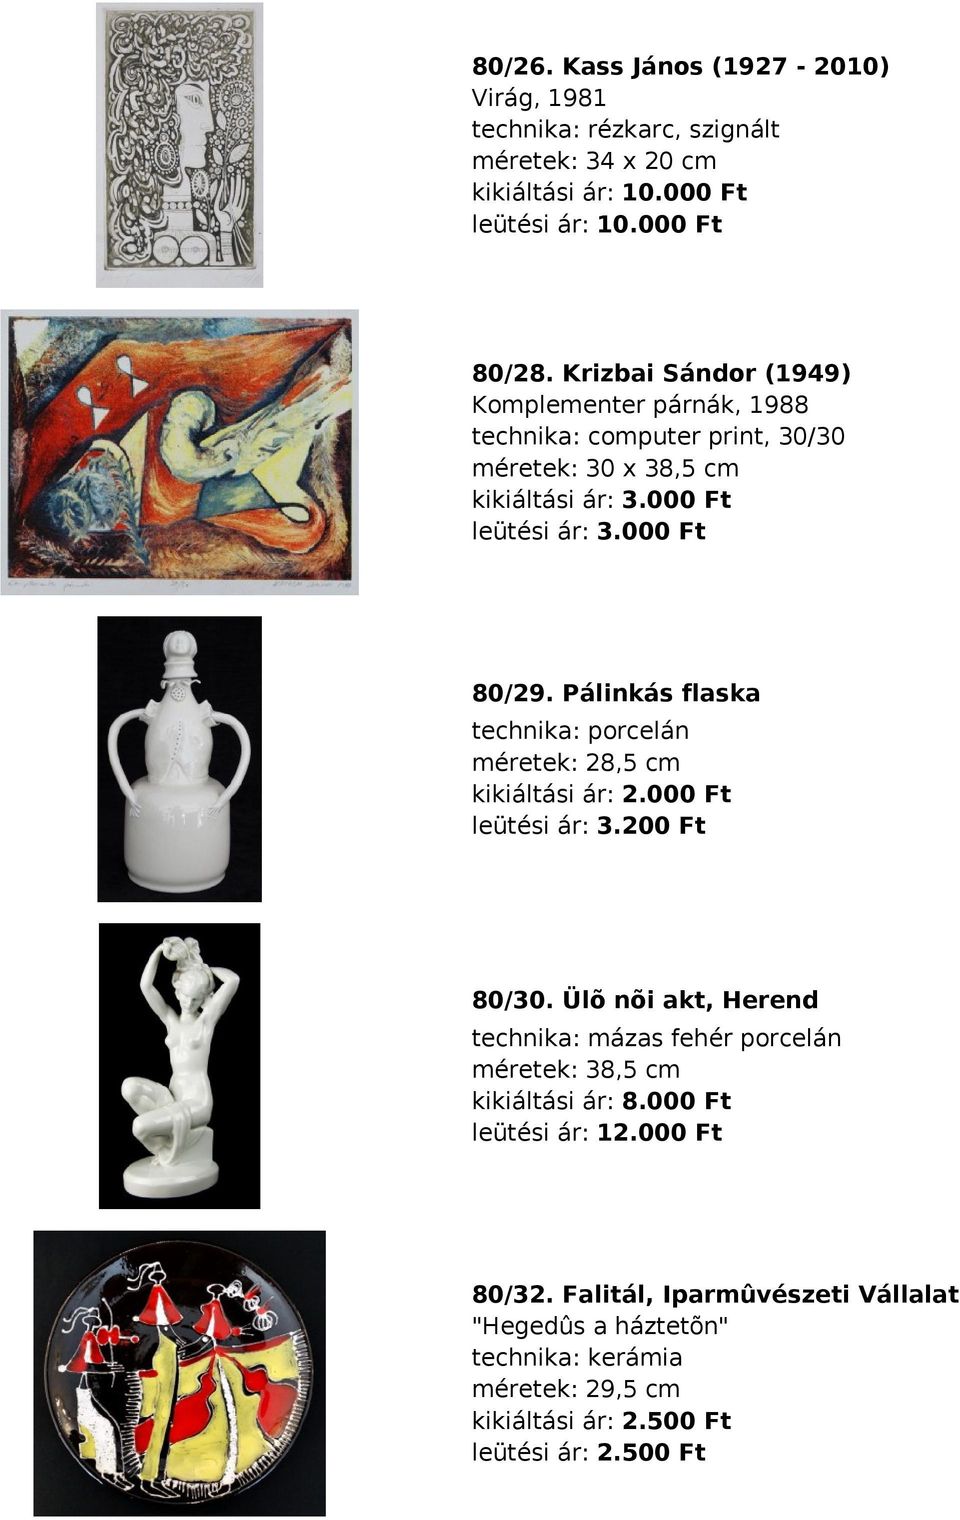 Pálinkás flaska technika: porcelán méretek: 28,5 cm kikiáltási ár: 2.000 Ft leütési ár: 3.200 Ft 80/30.